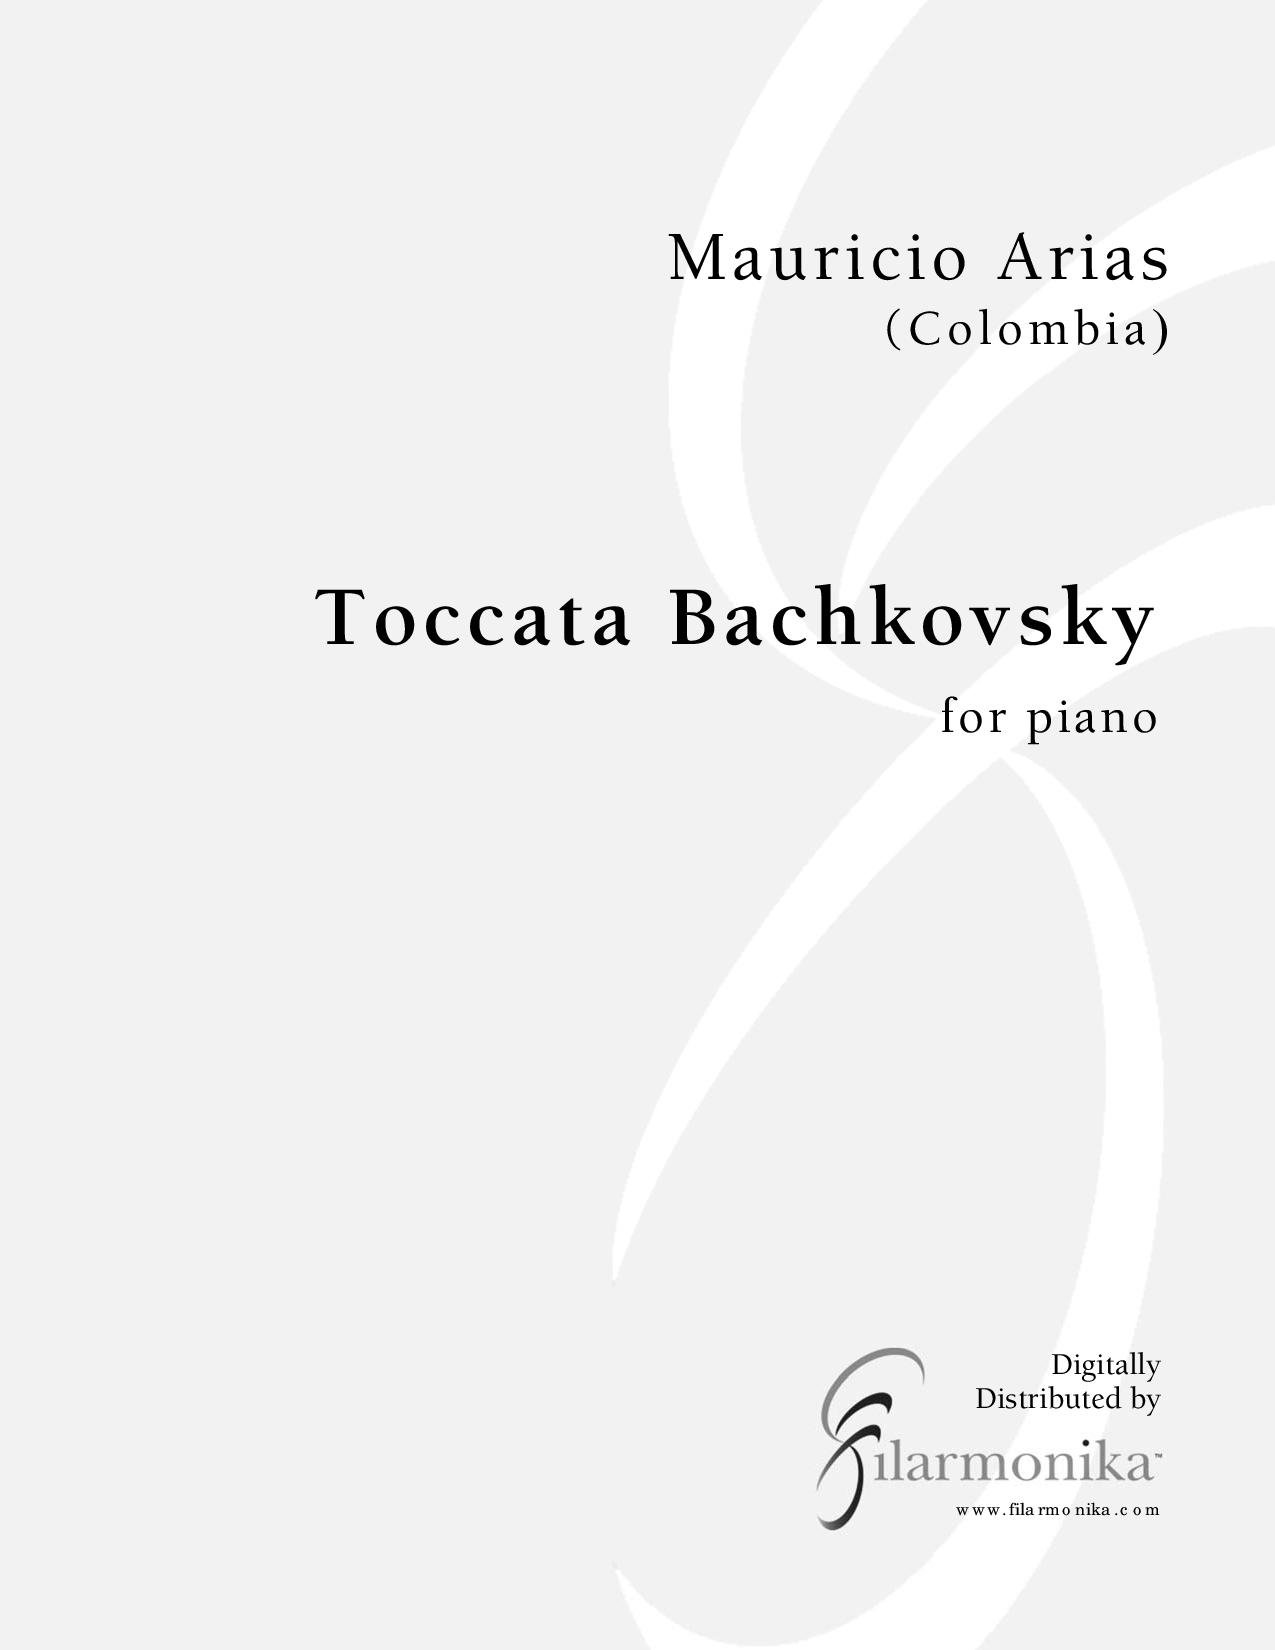 Toccata Bachkovsky, for piano